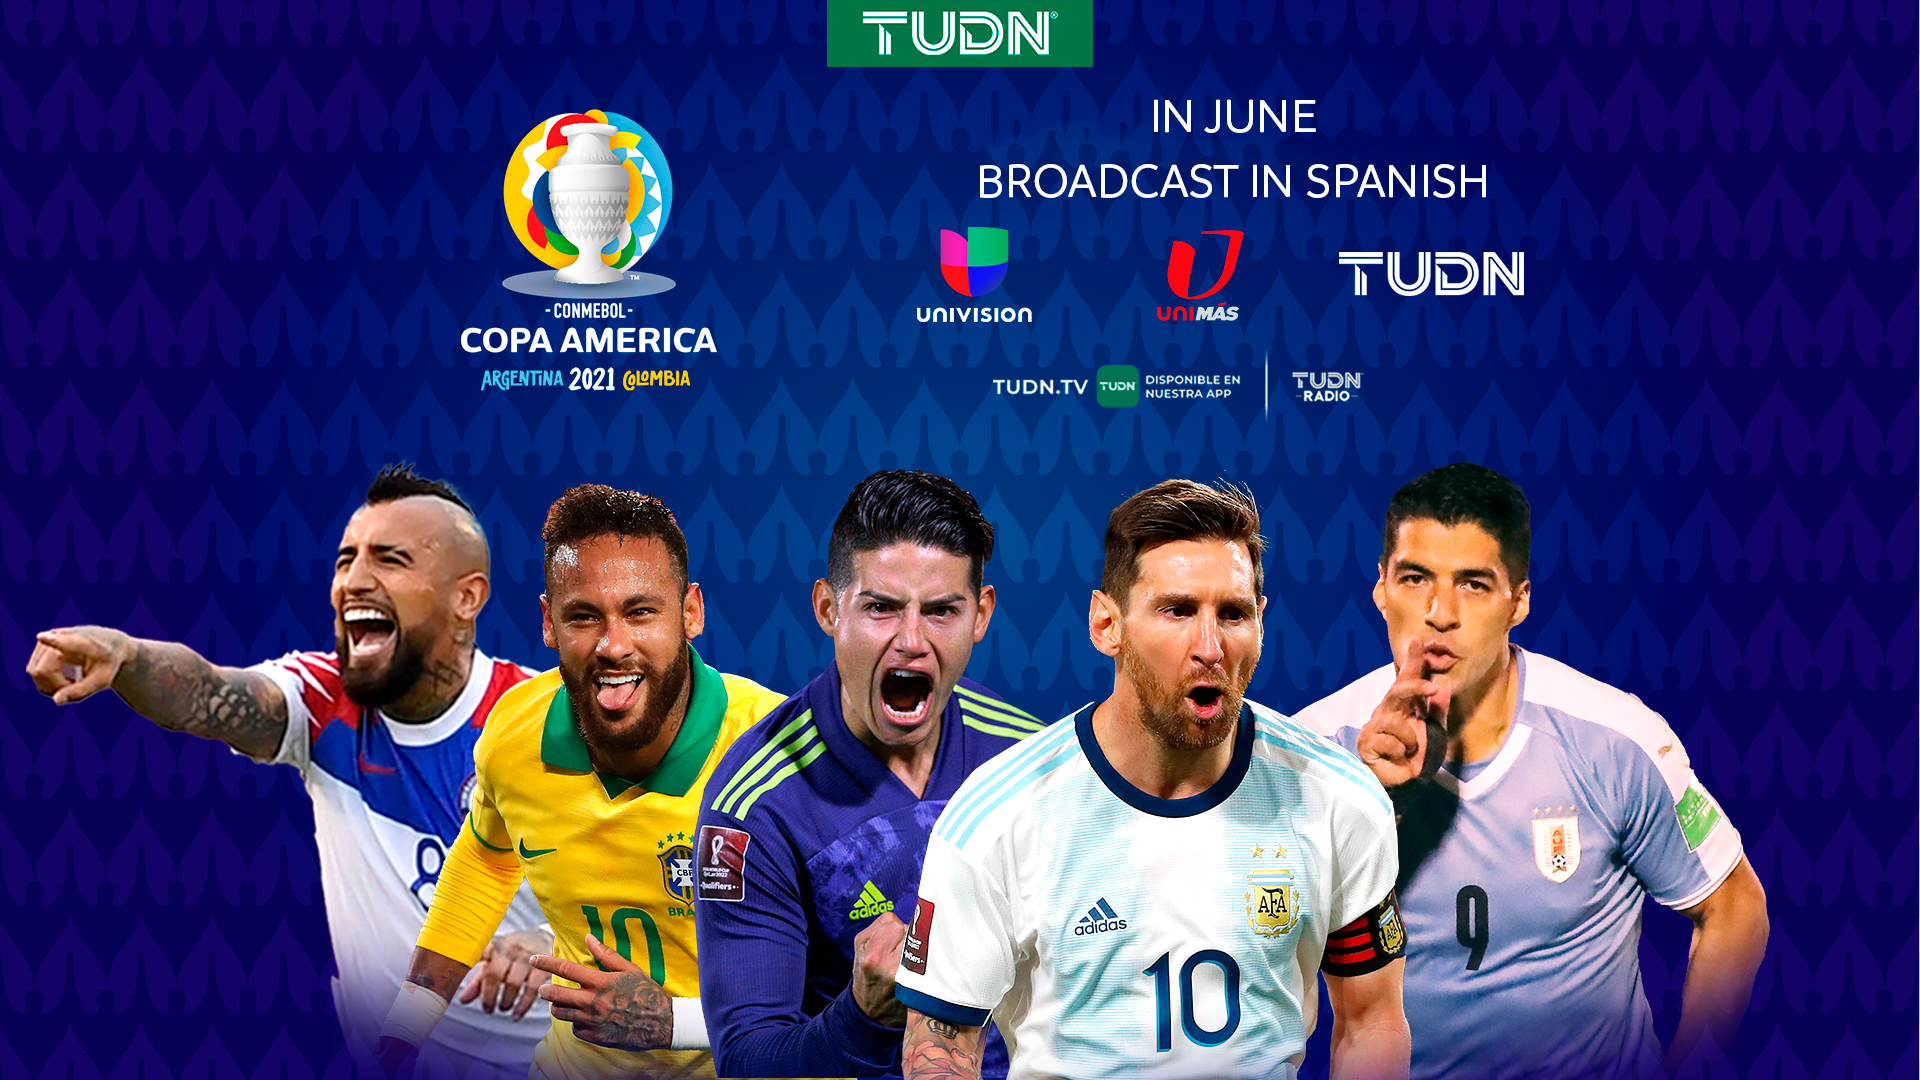 CONMEBOL Copa América Returns to Univision’s TUDN - TelevisaUnivision